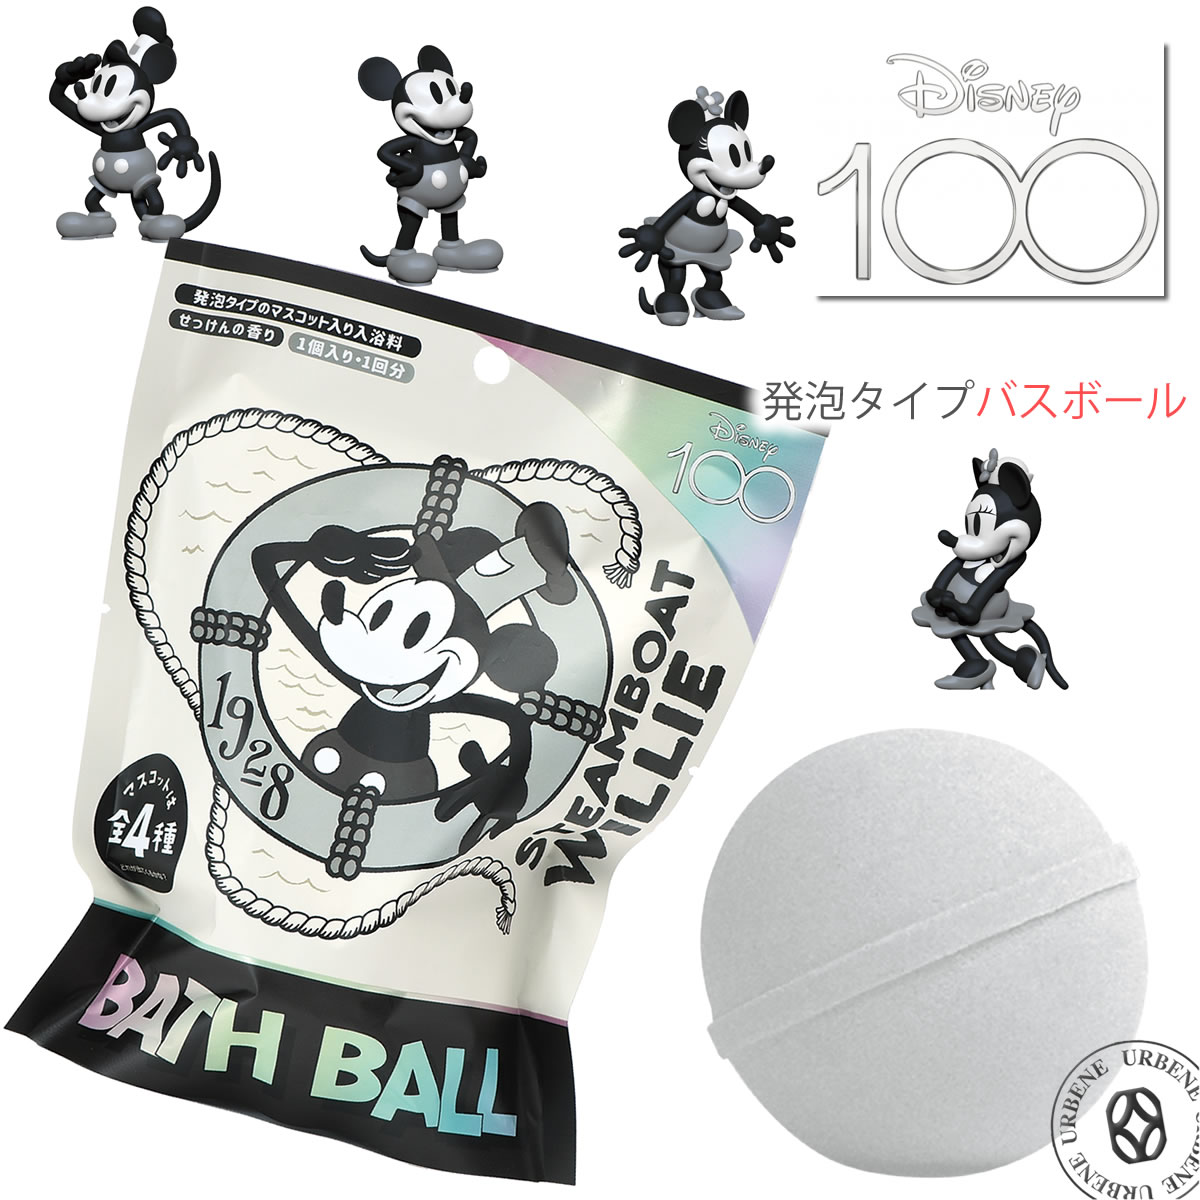 ノルコーポレーション Disney 100th バスボール せっけんの香り 浴用入浴剤の商品画像